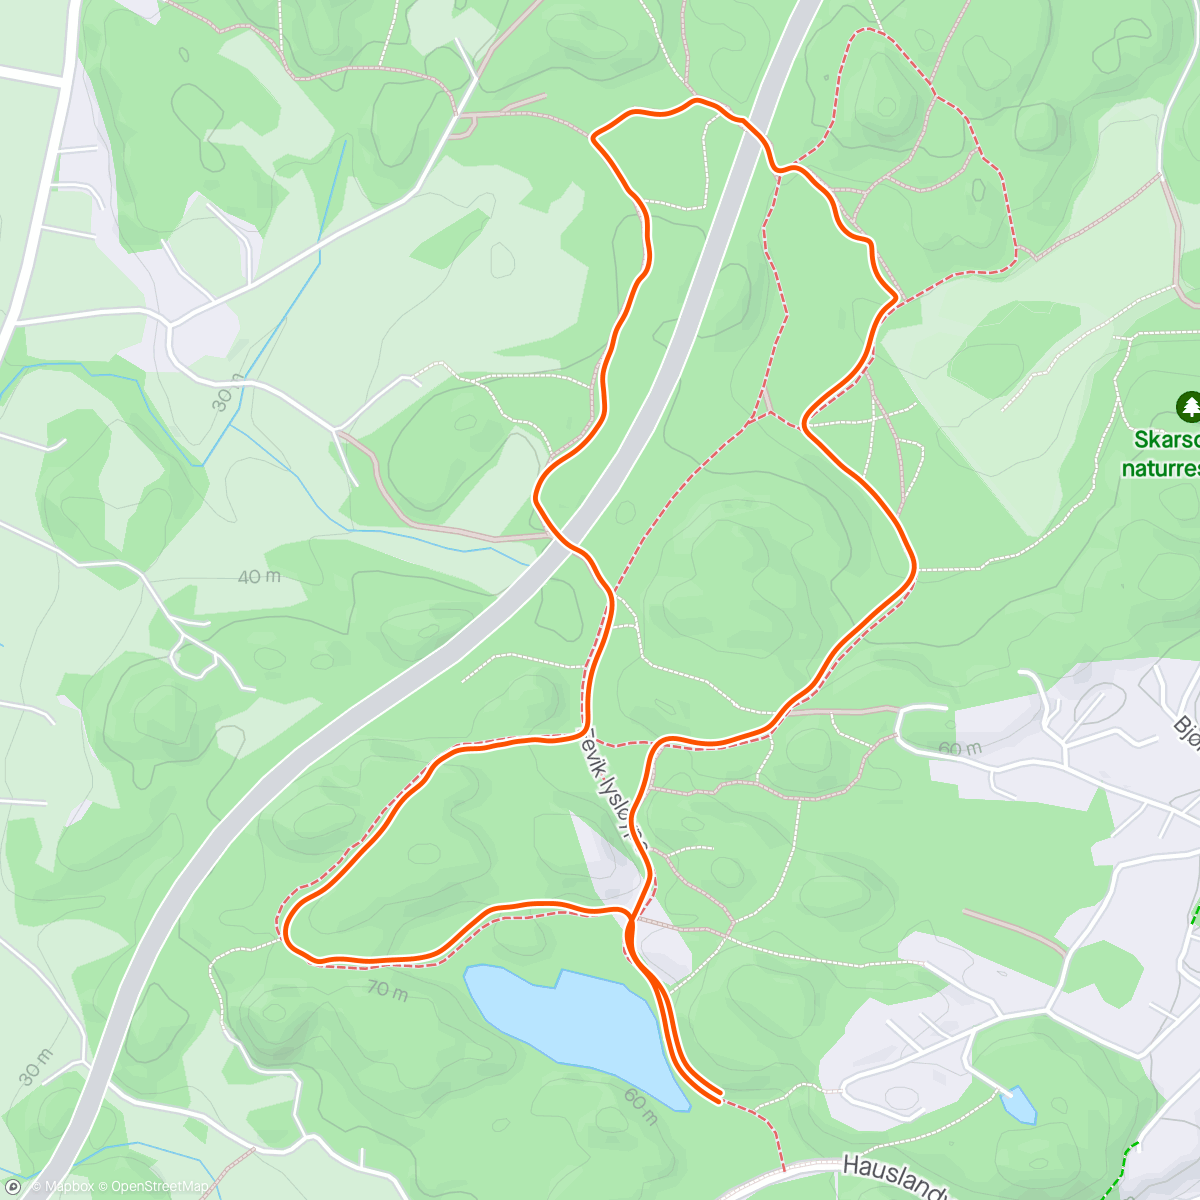 Map of the activity, Terrengkarusselen løp#3 Hausland - kort løype onsdag morgen pga lagtempotrening sykkel under fellestarten. Kona gjennomførte samtidig😊👍